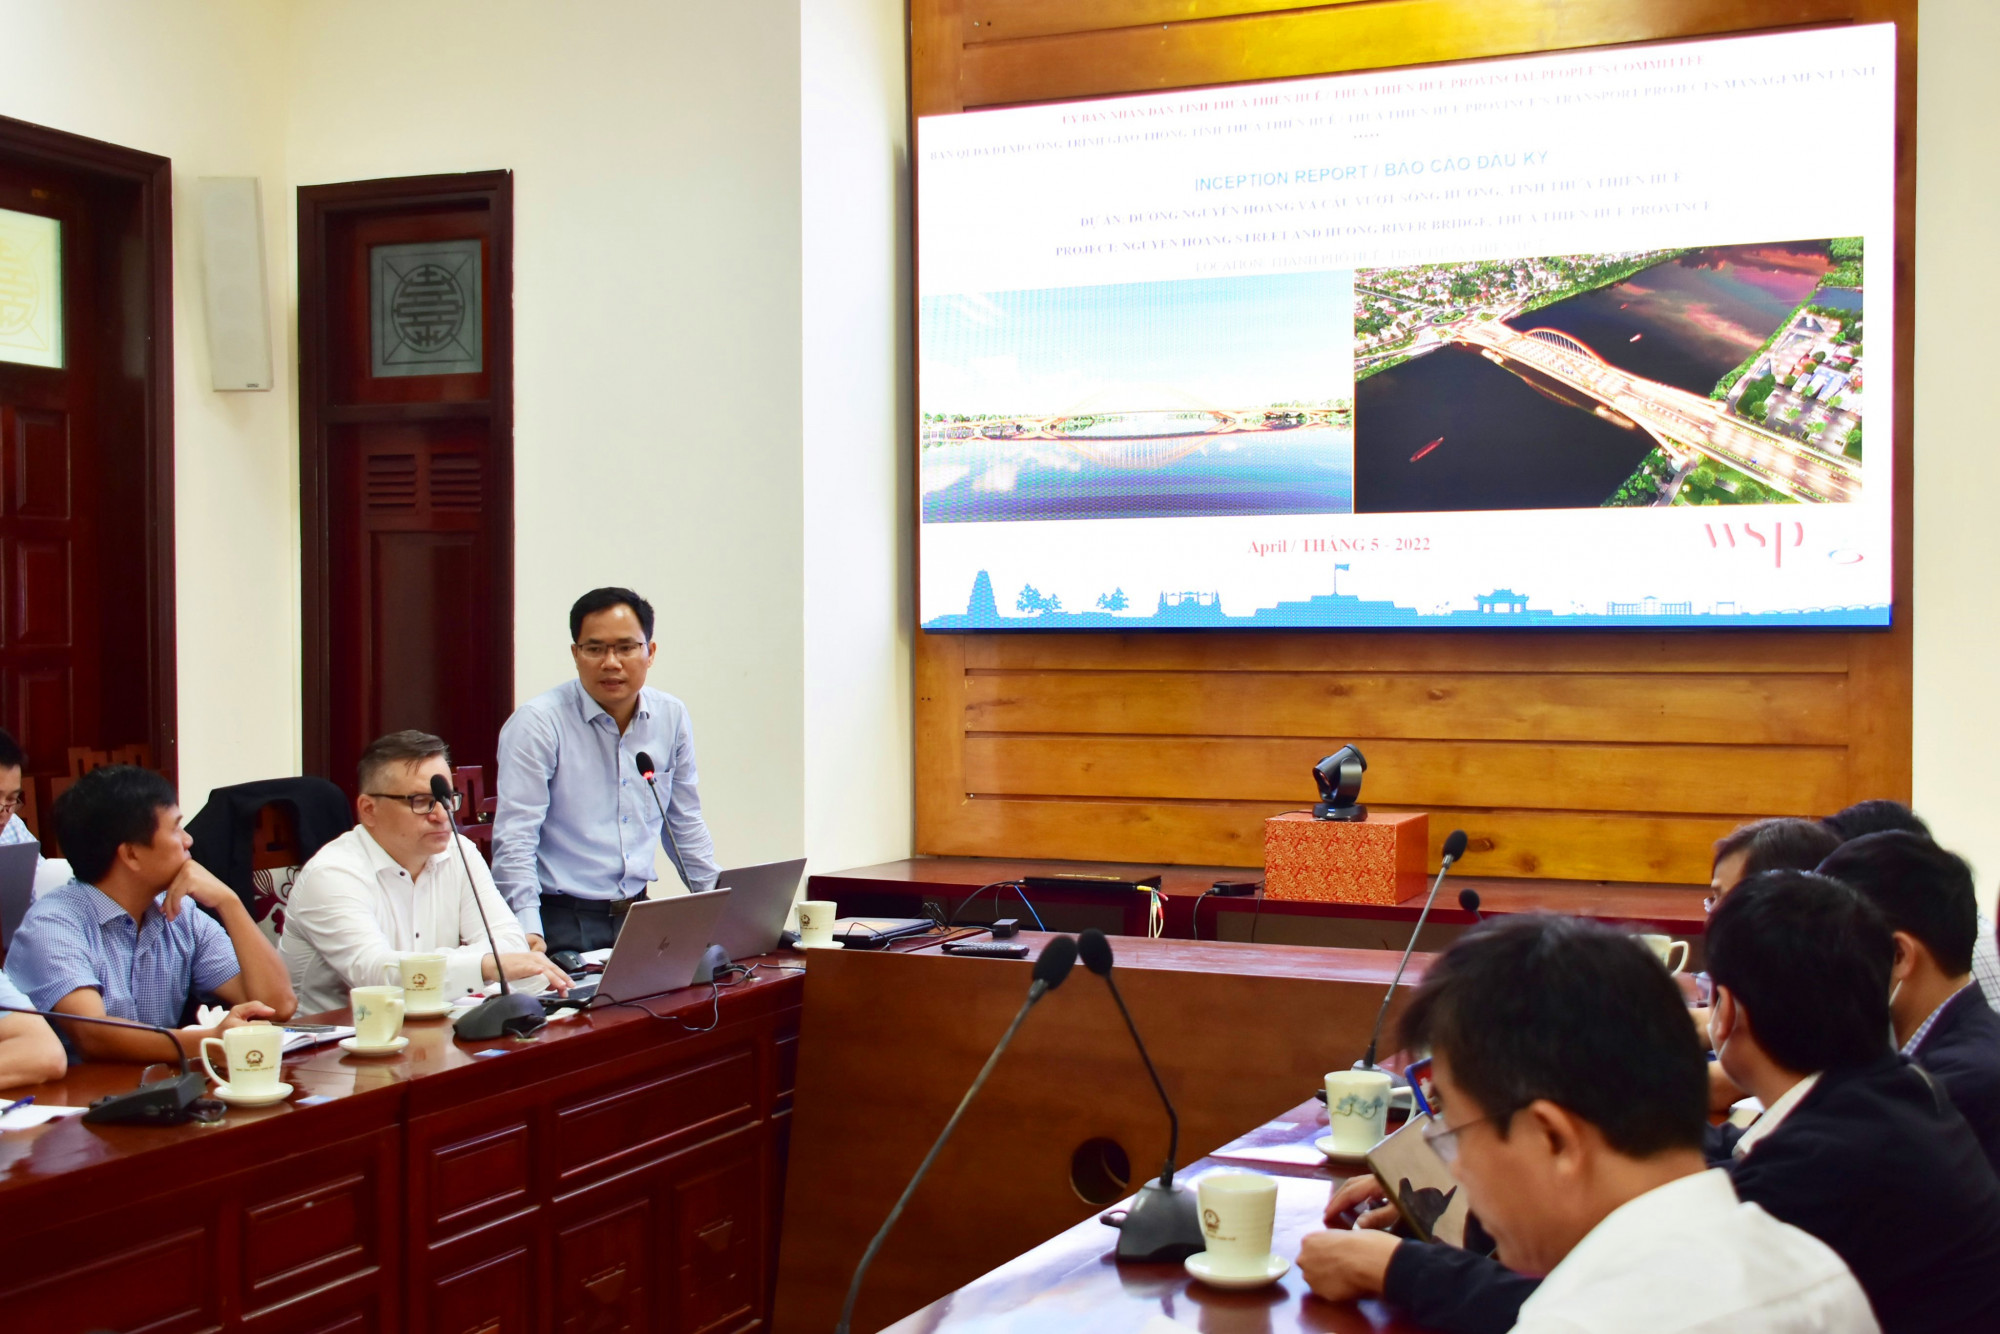 Quang cảnh buổi họp nghe báo cáo đầu kỳ dự án cầu vượt sông Hương